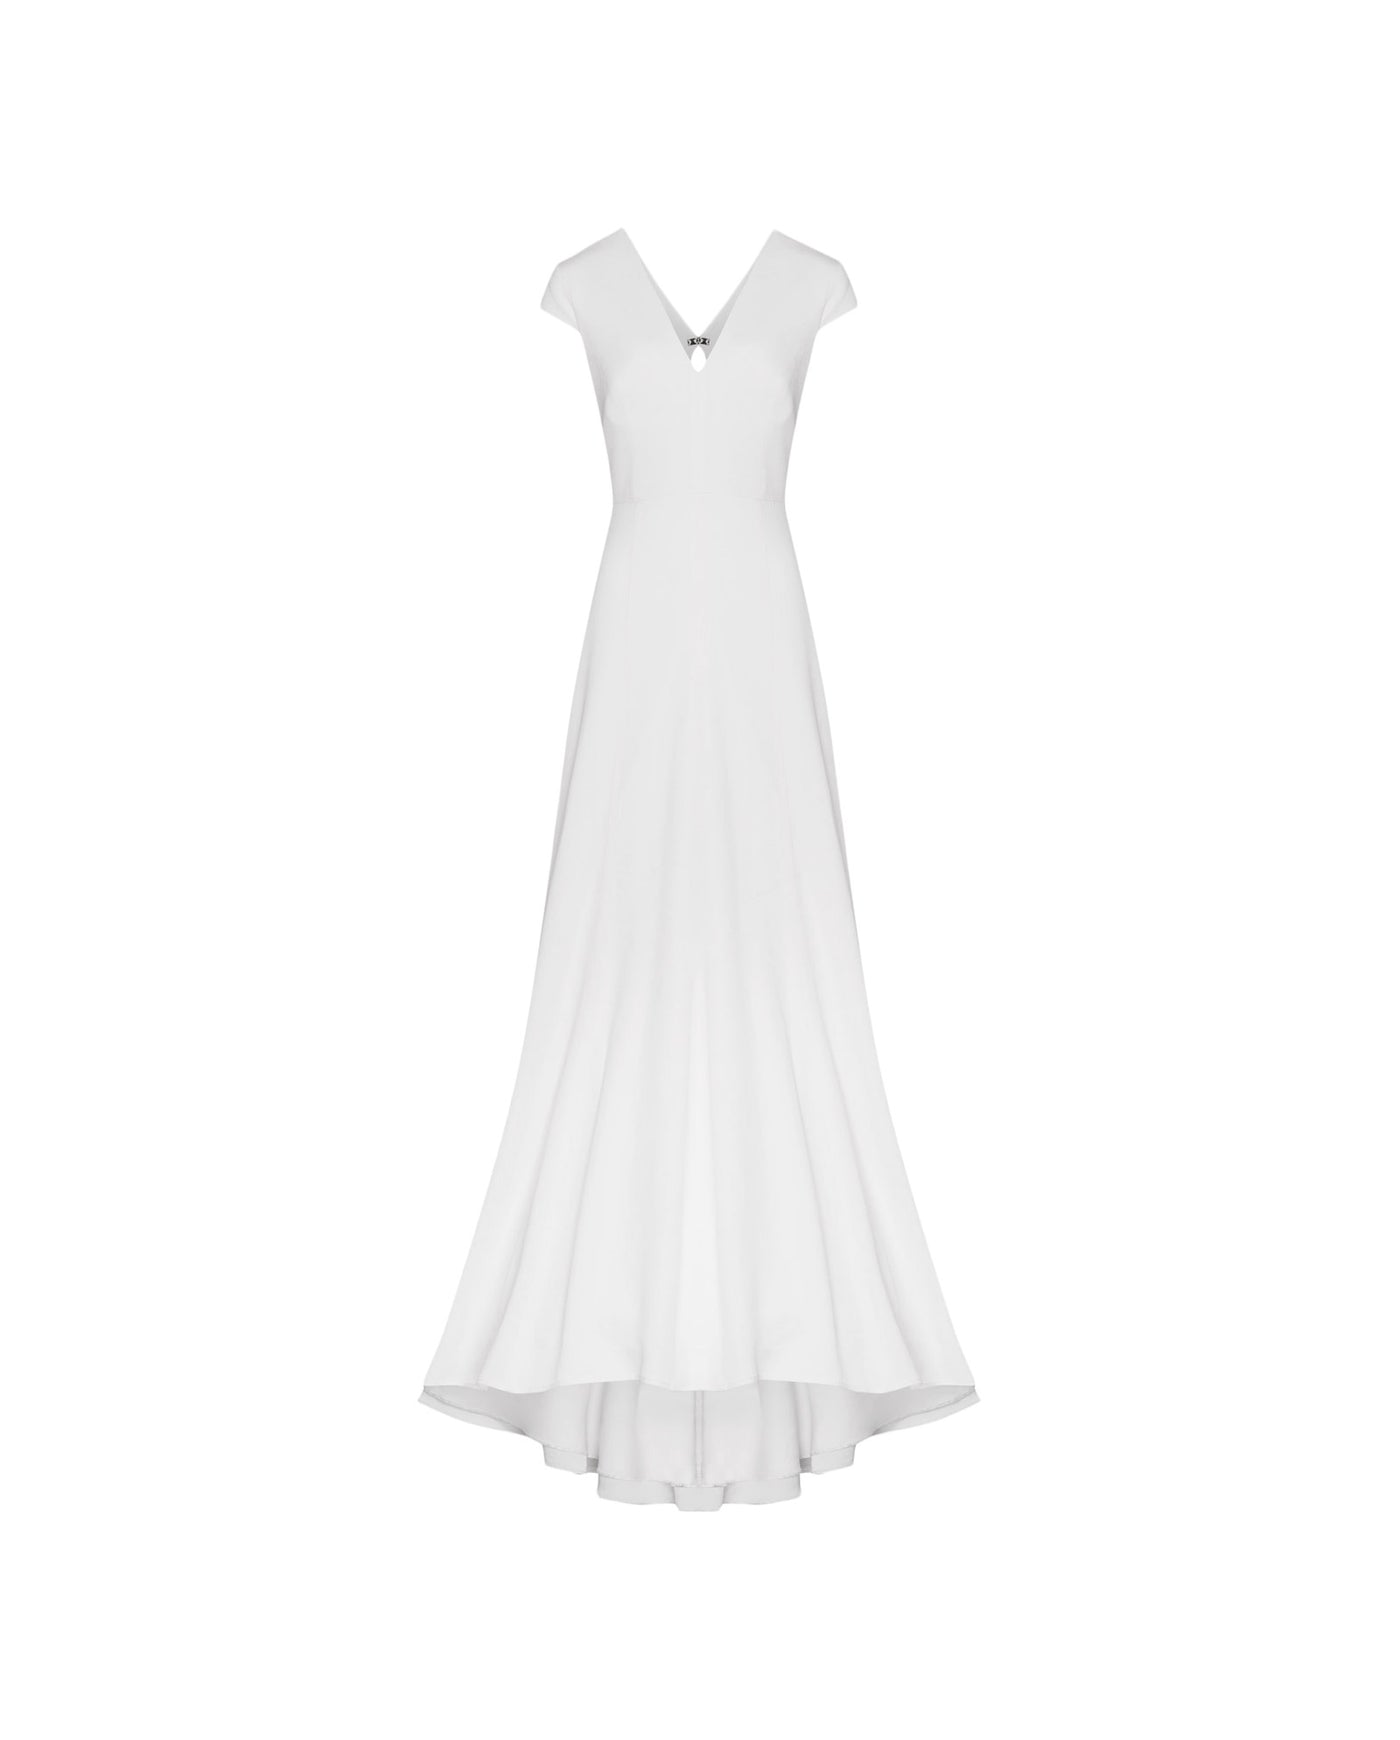 DARIA Bridal Dress